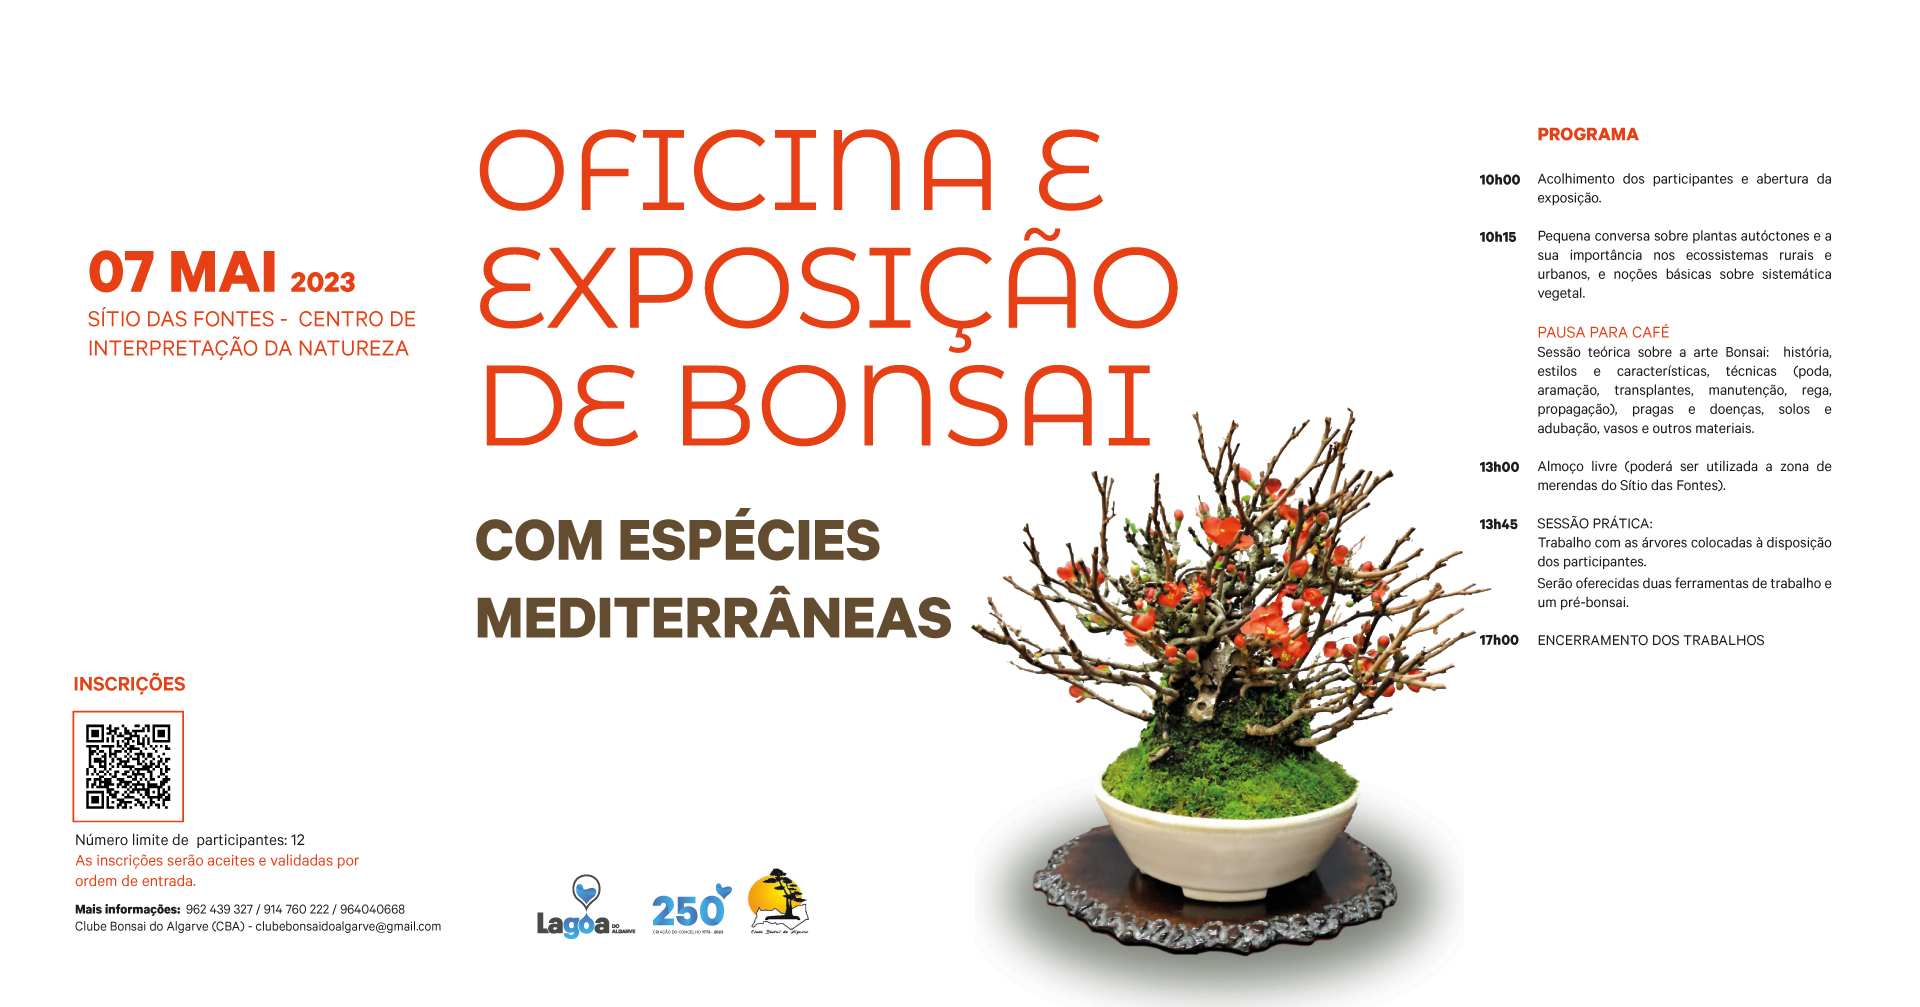 “Oficina e Exposição de Bonsai com espécies Mediterrânicas”